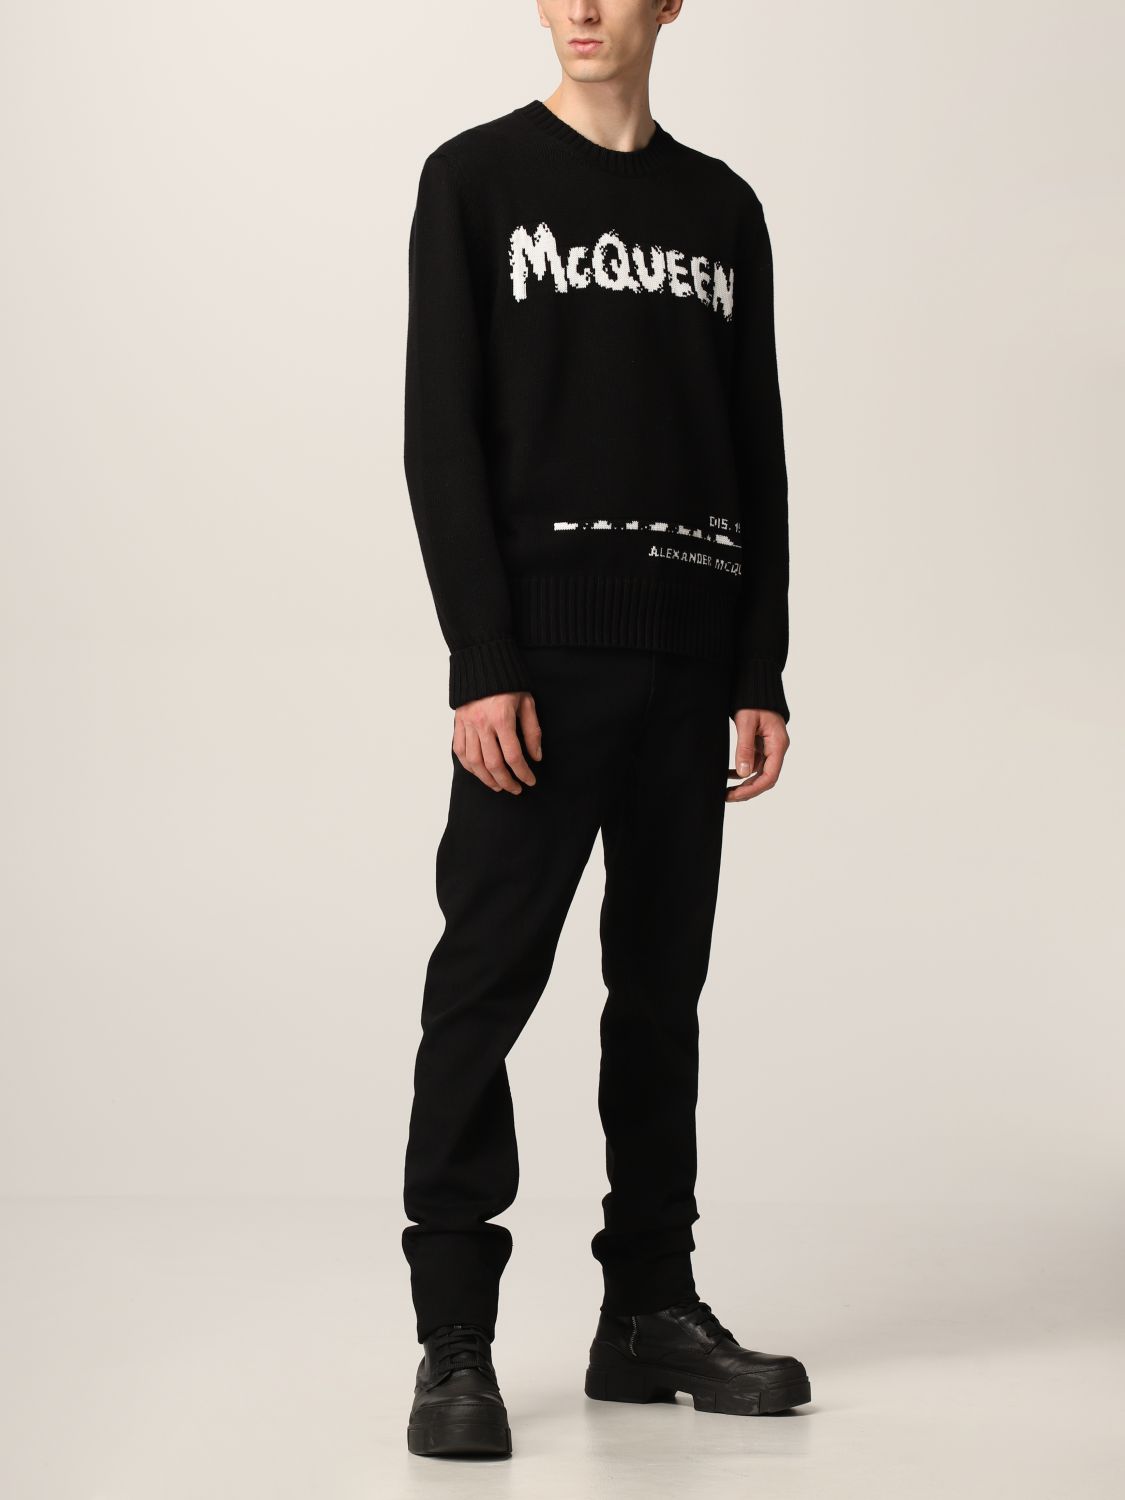 ALEXANDER MCQUEEN: Sweater men | Sweater Alexander Mcqueen Men 